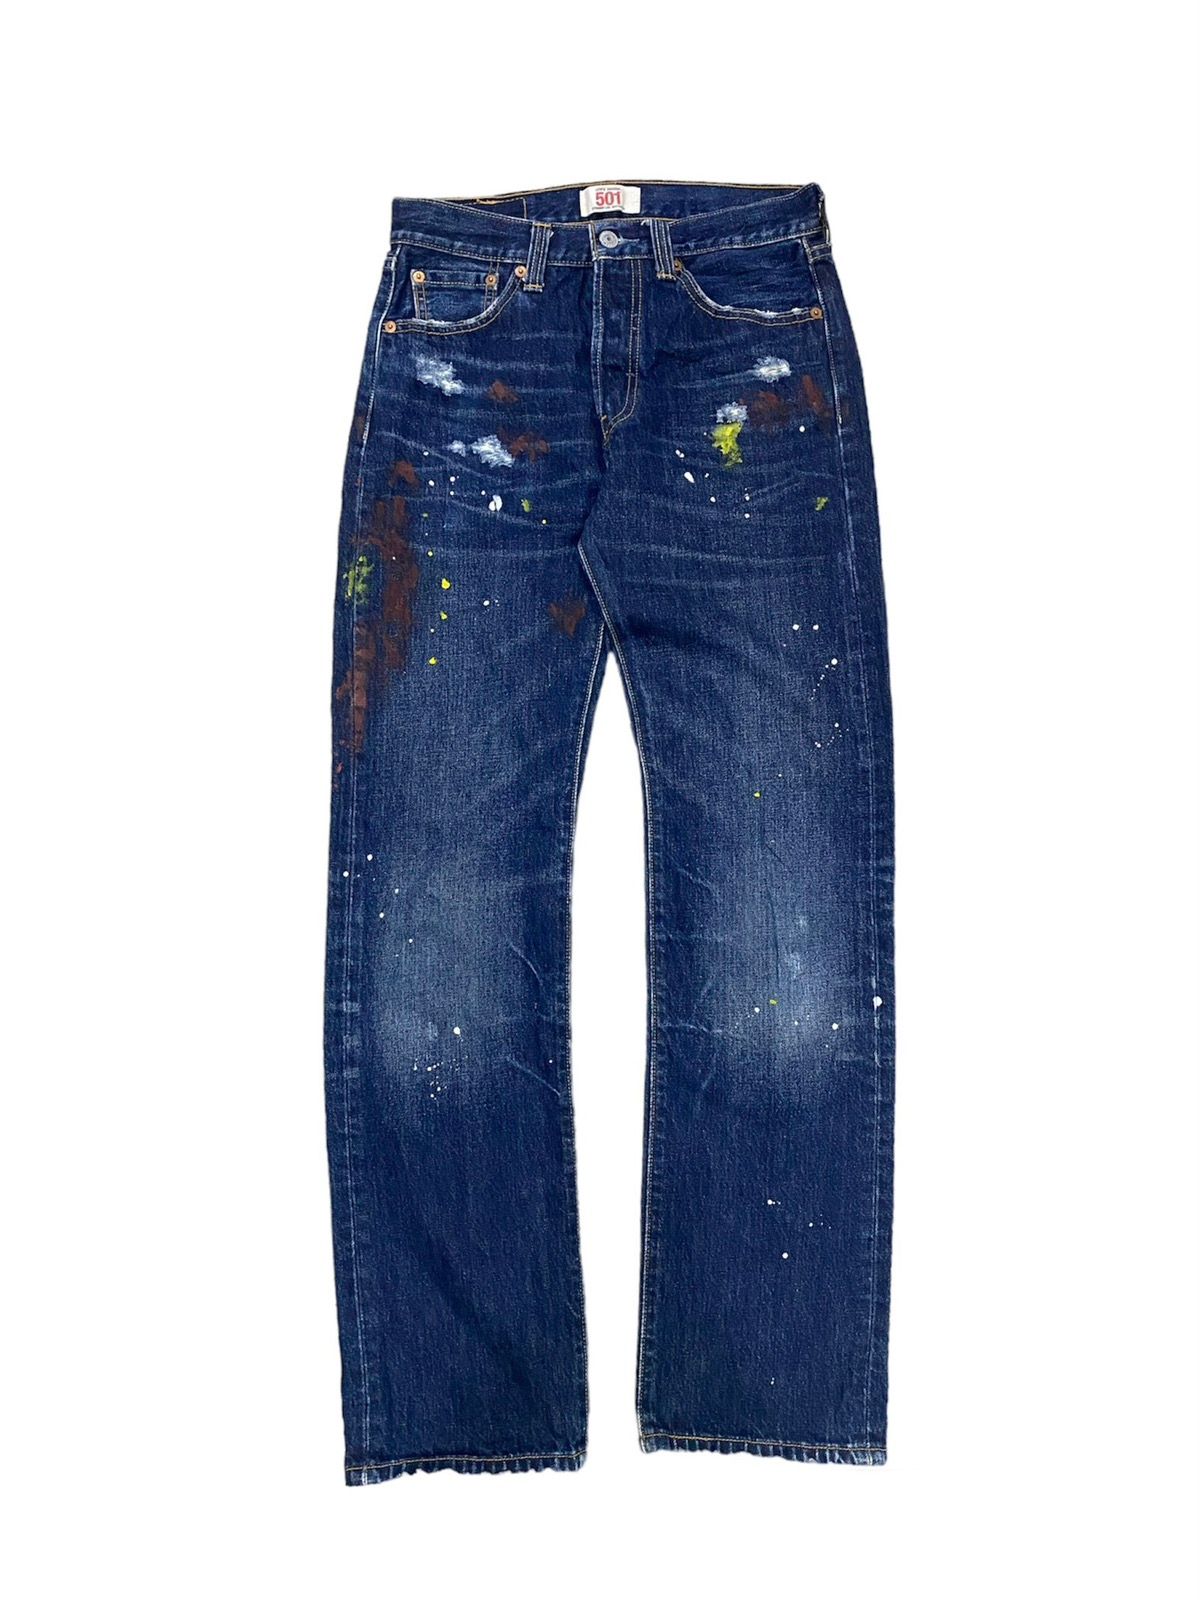 Levi’s Original Paint Splatter Limited Edition Jeans - 1